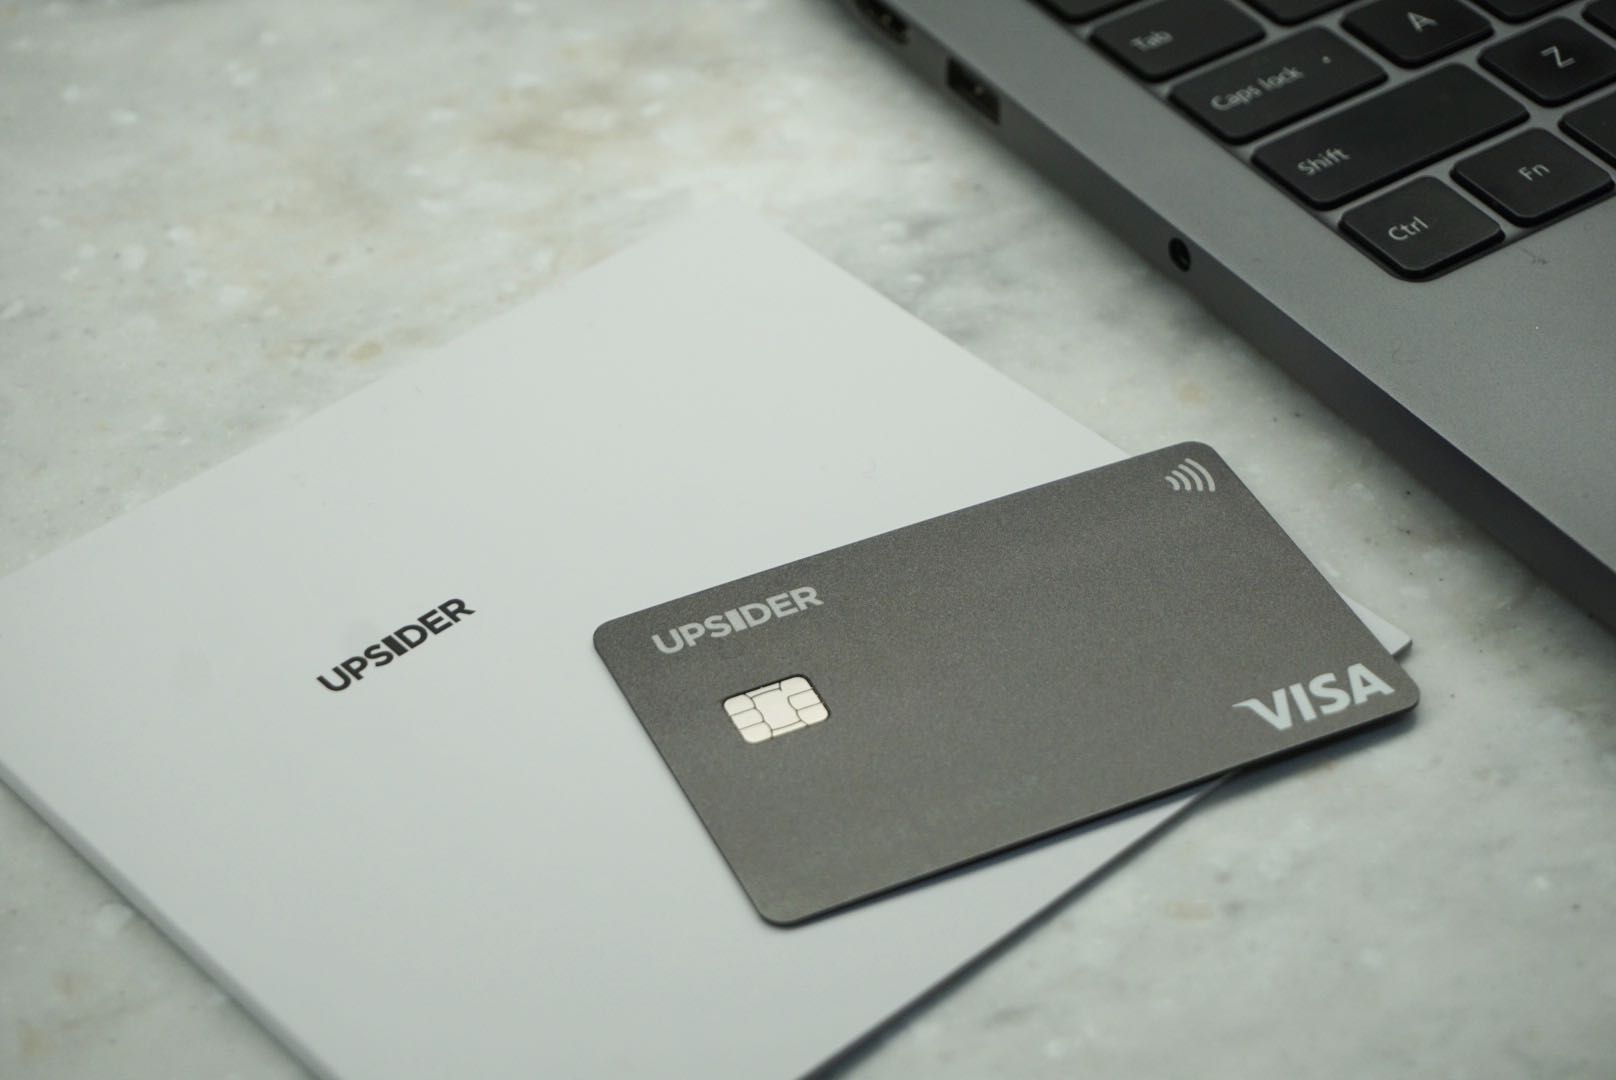 UPSIDERカードのイメージ。実店舗で使えるリアルカードとWeb決済専用のバーチャルカードの2タイプがある。バーチャルカードはウェブから最短10秒程度で発行が可能